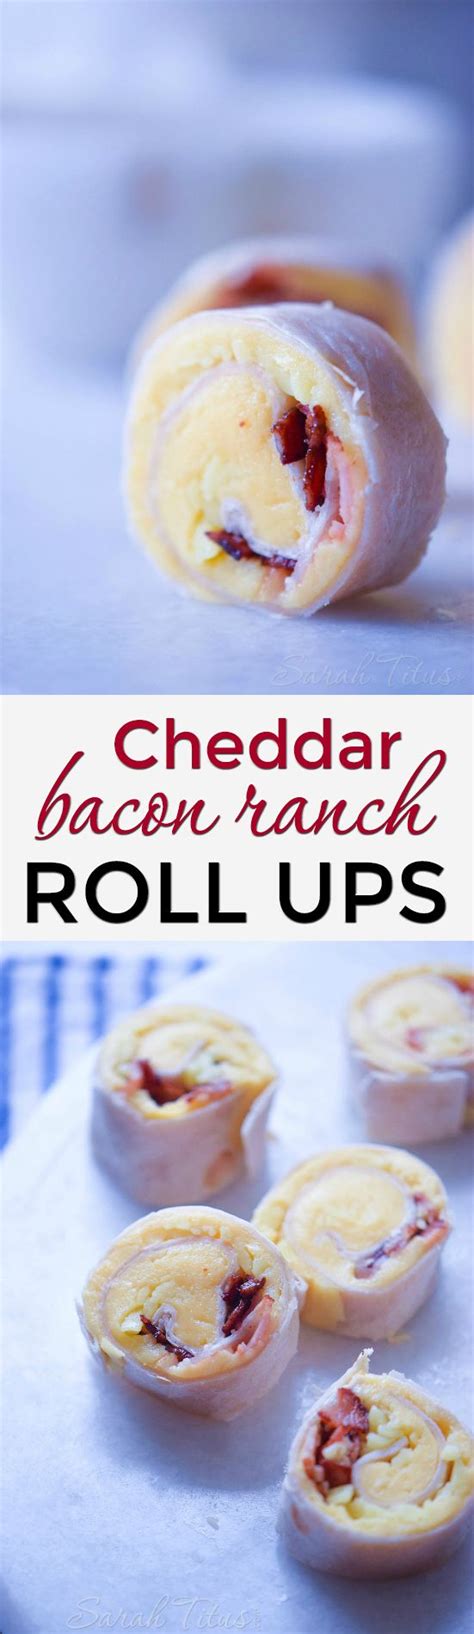 Cheddar Bacon Ranch Roll Ups Recipe Bacon Ranch Homemade Recipes